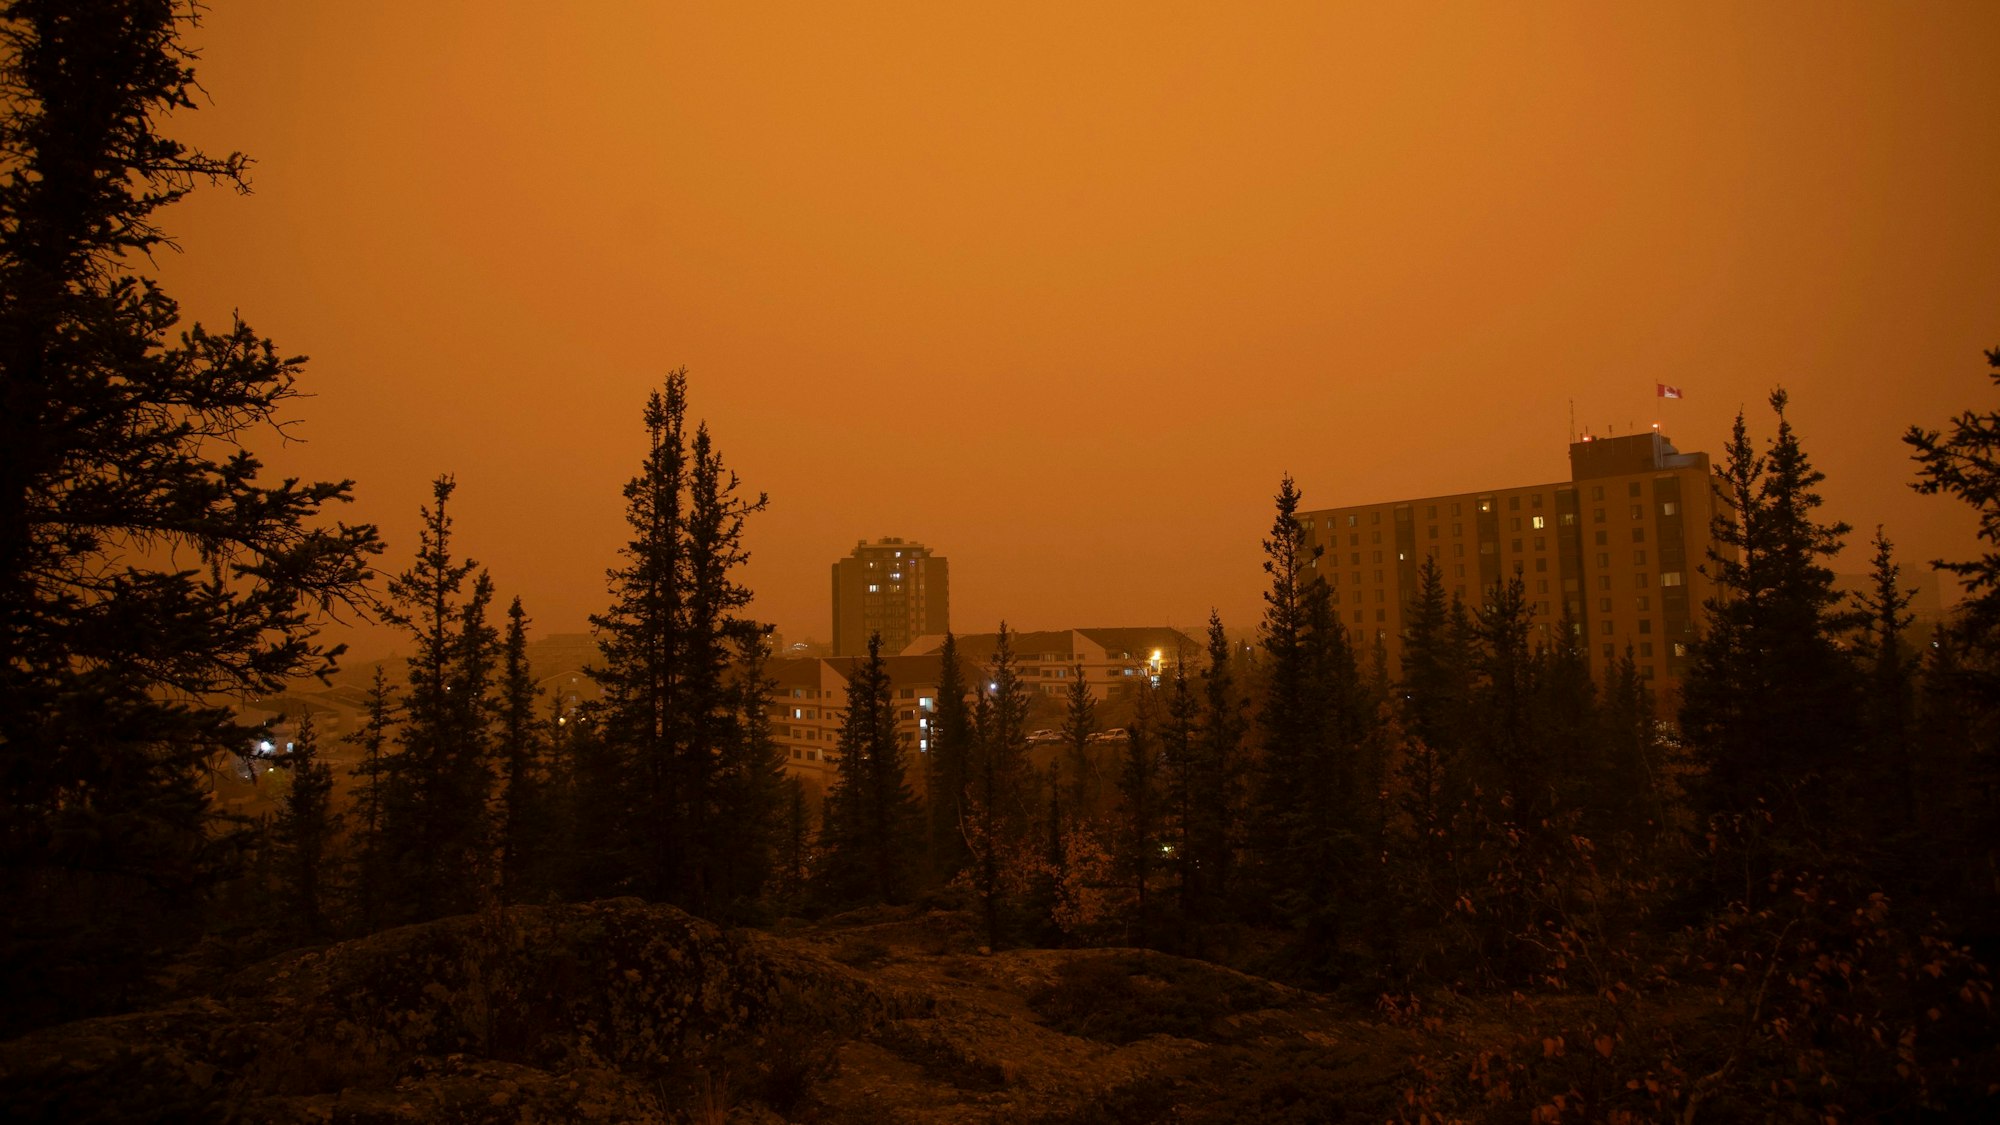 Starker Rauch von Waldbränden im Norden von Alberta und British Columbia zieht über die Stadt Yellow Knife im kanadischen Bundesstaat Northwest Territories hinweg. Die Gebäude und der Wald sind in einen gelben und orangefarbenen Nebel gehüllt.